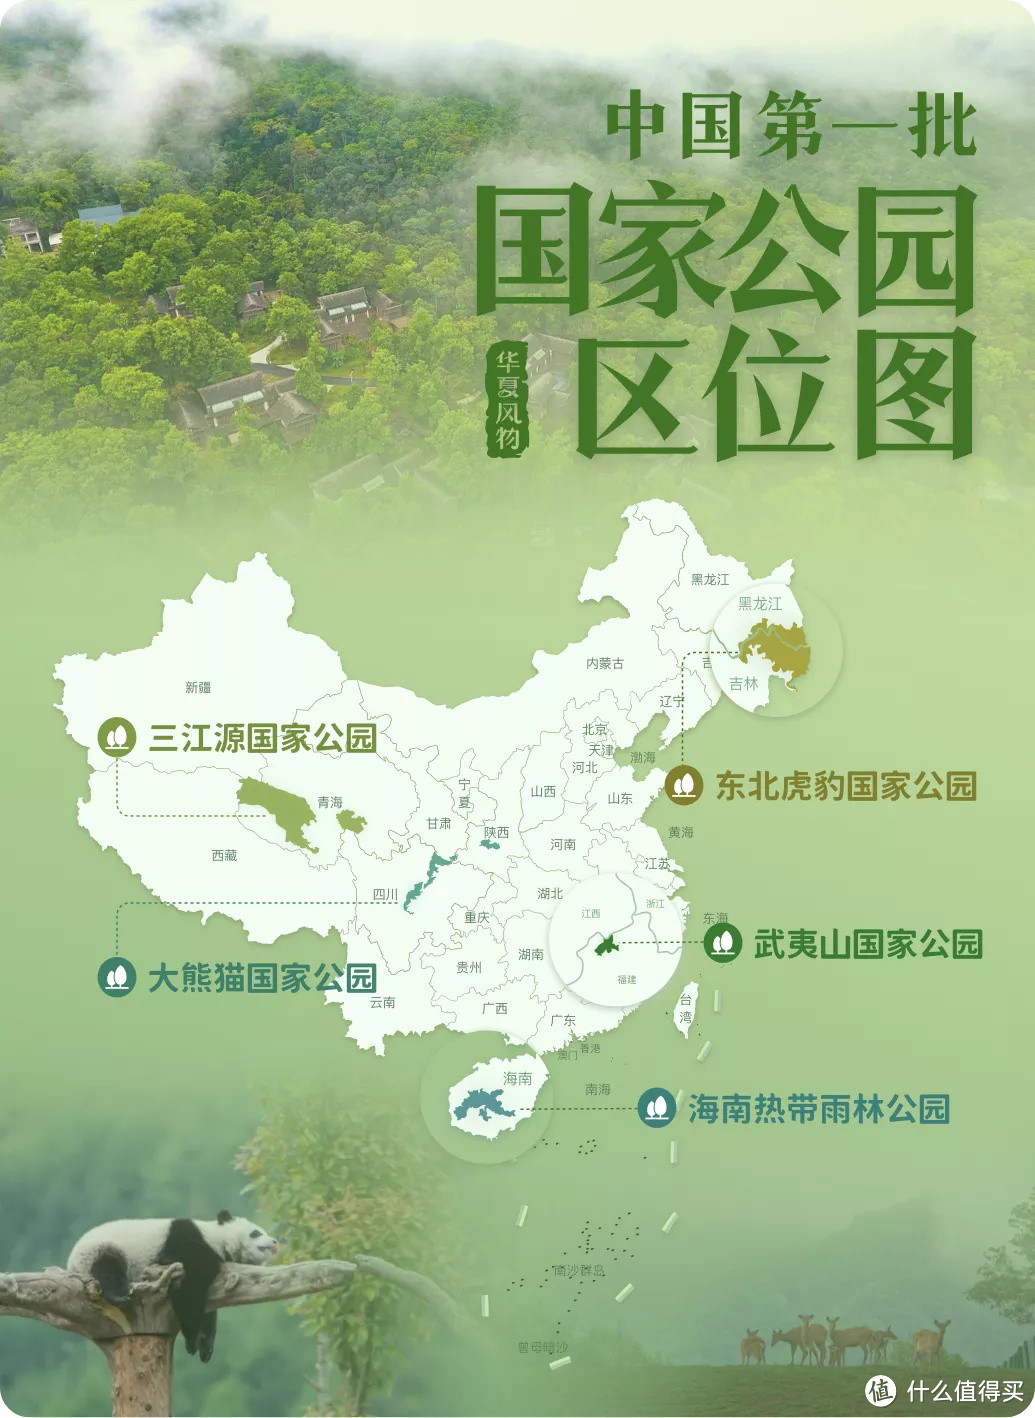 中国第一批国家公园区位图 ©华夏风物